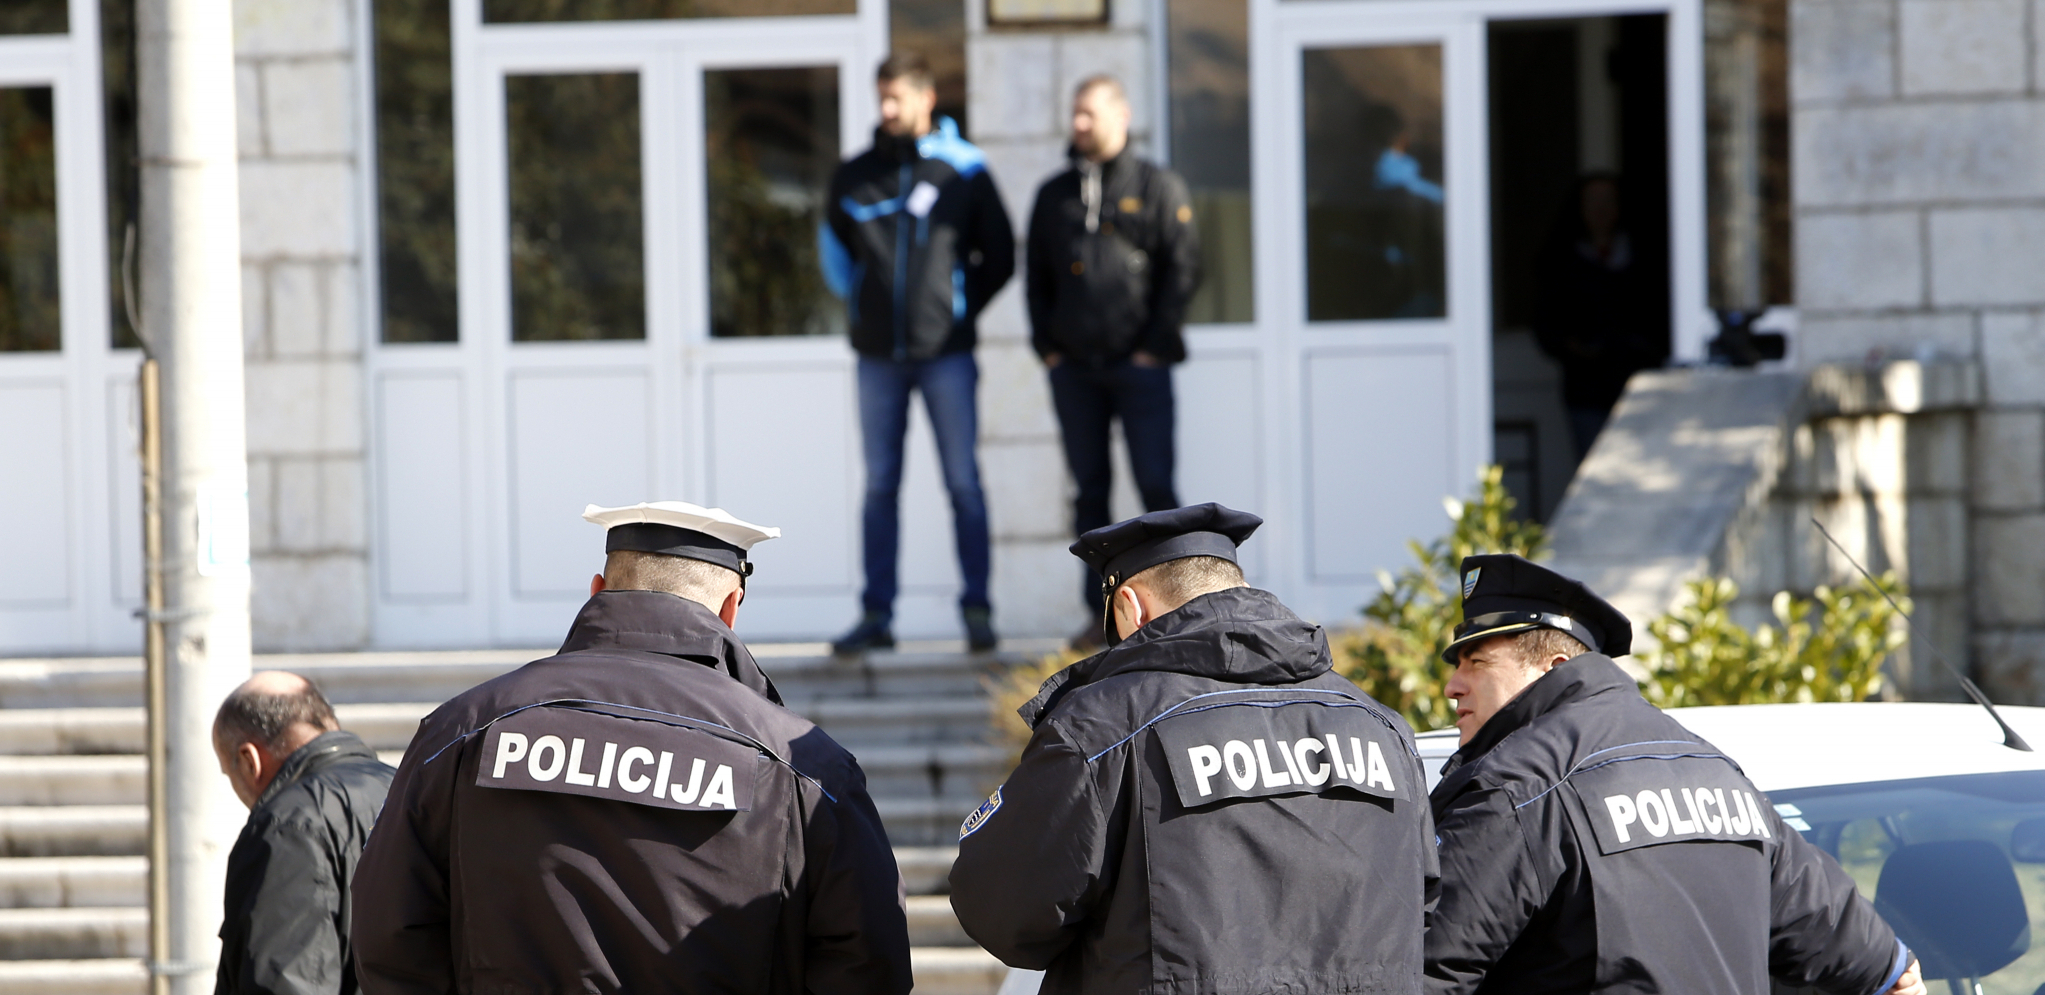 MALOLETNIK PRETIO POKOLJEM U SREDNJOJ ŠKOLI Drama u Trebinju, policija ga odmah uhapsila